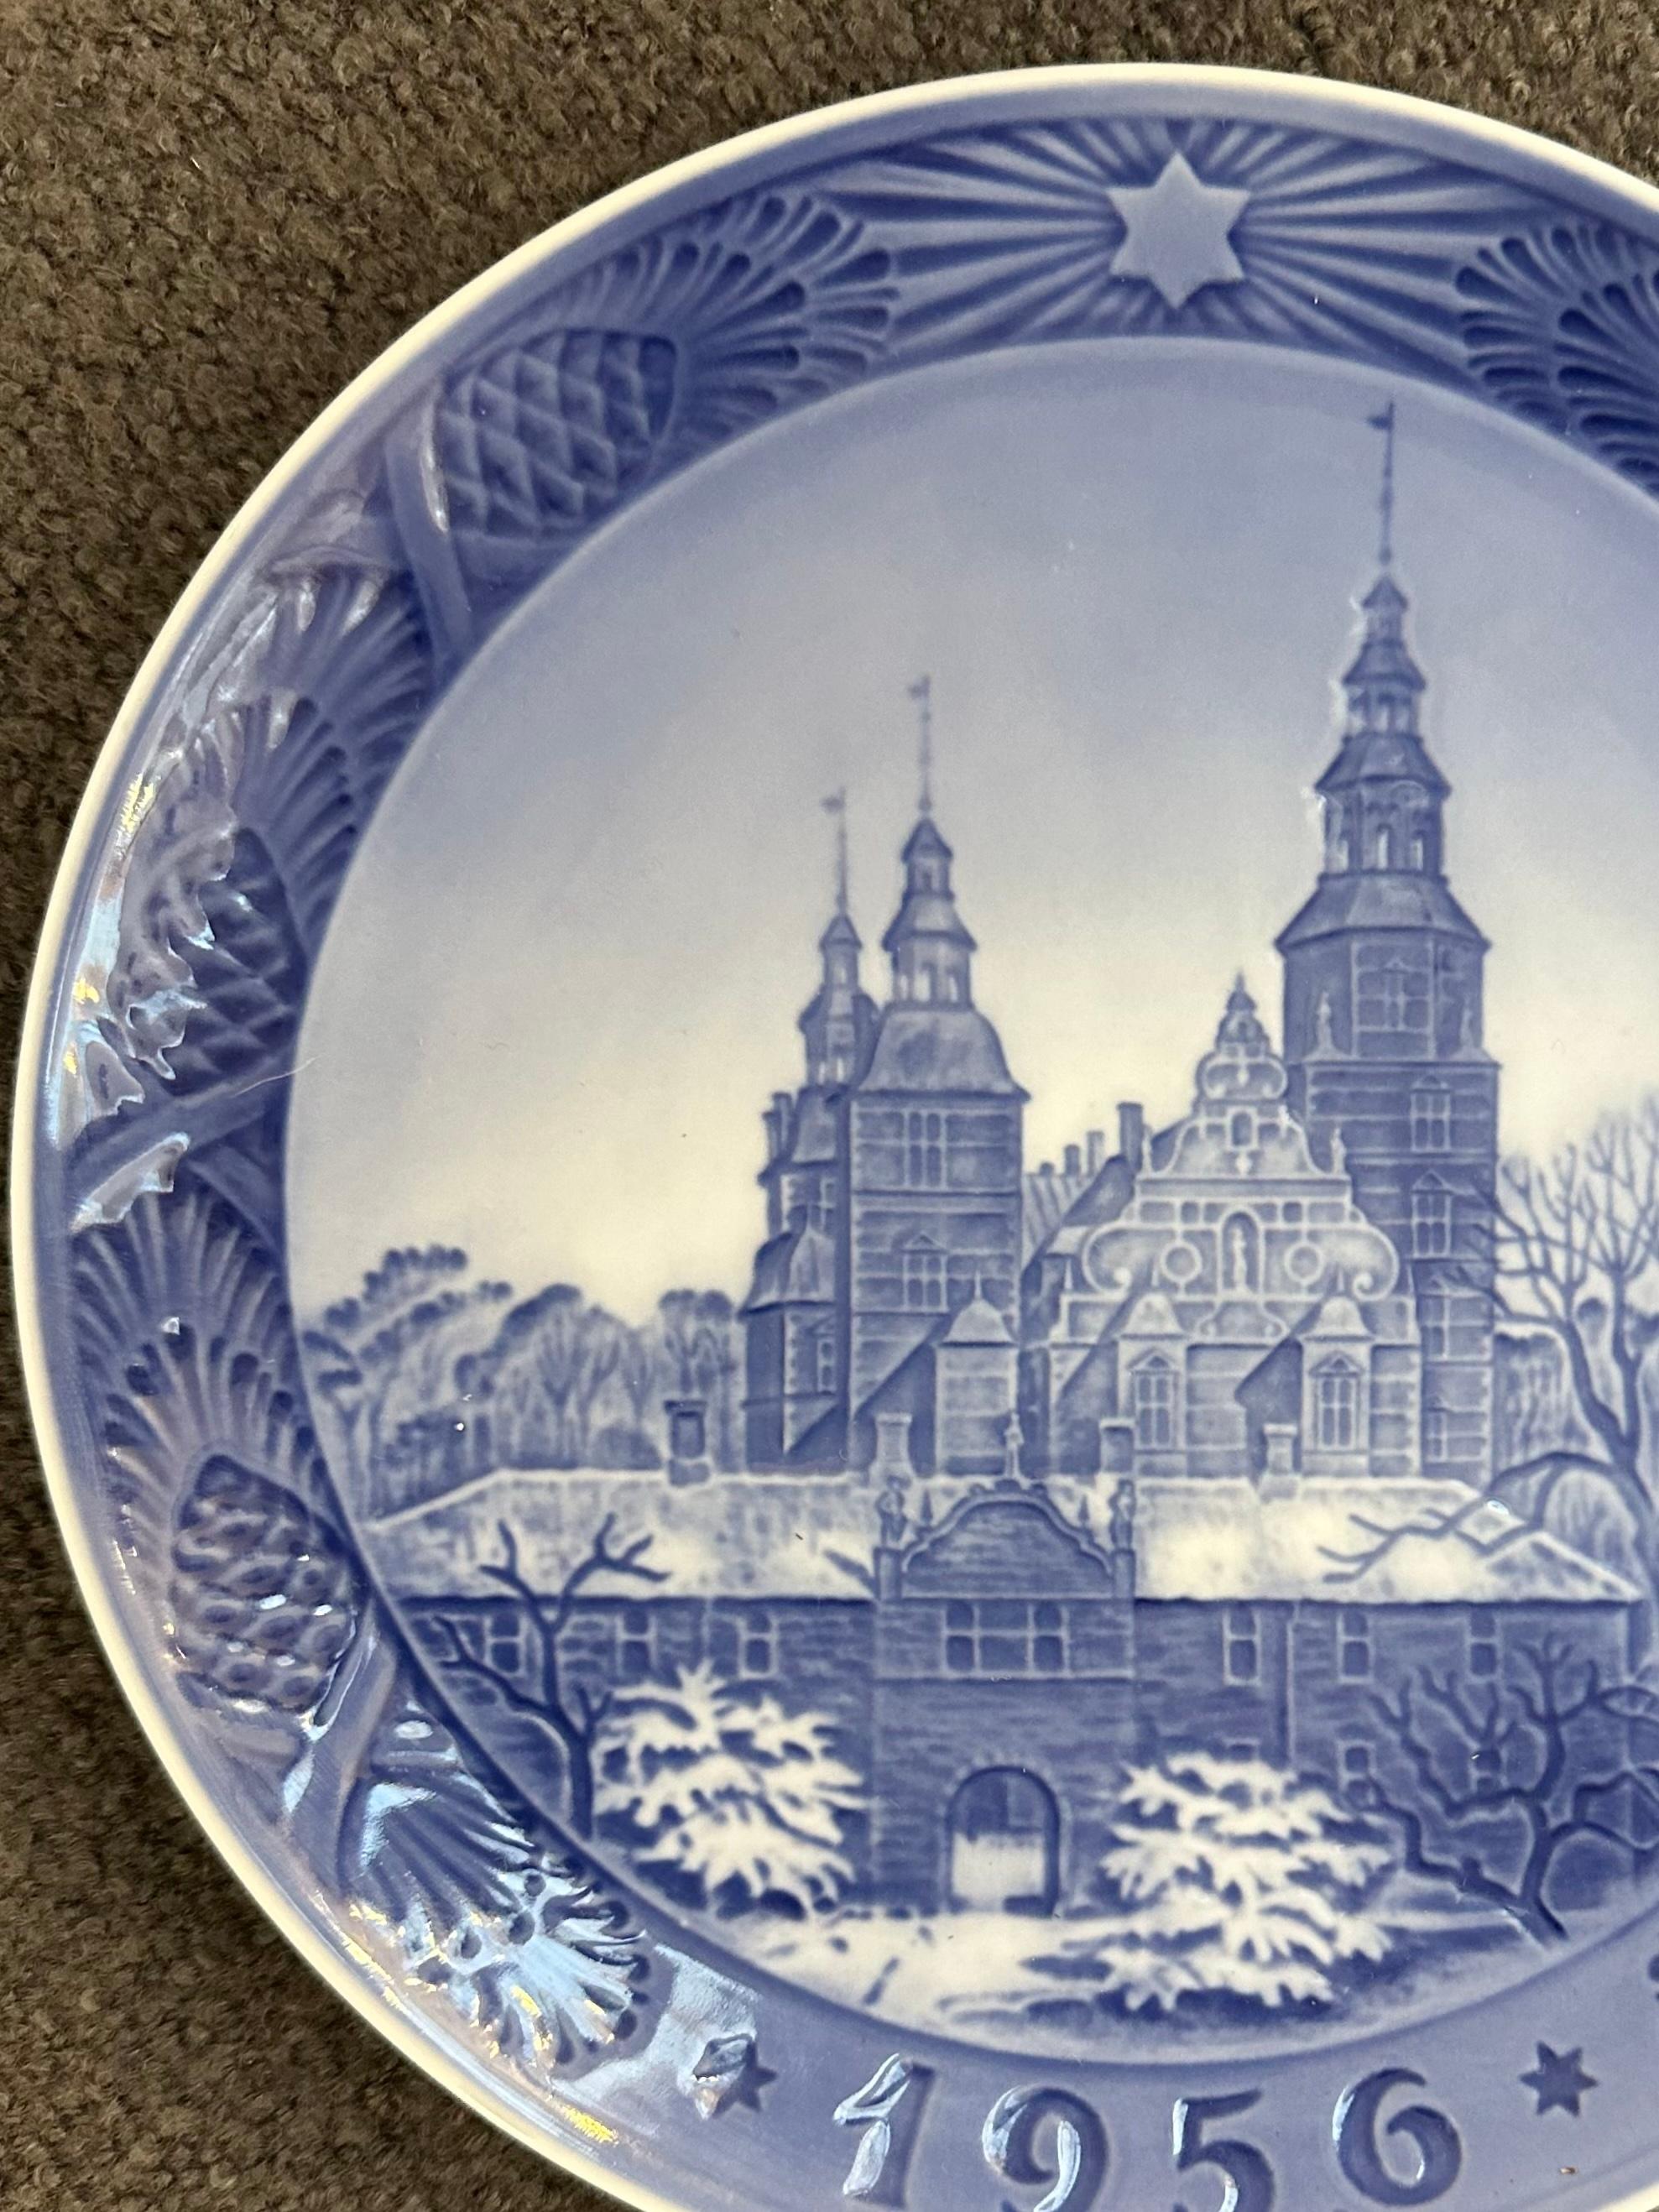 Mid-Century Modern 1956 Royal Copenhagen Christmas Plate - Rosenborg Castle Designed by Kai Lange. For Sale